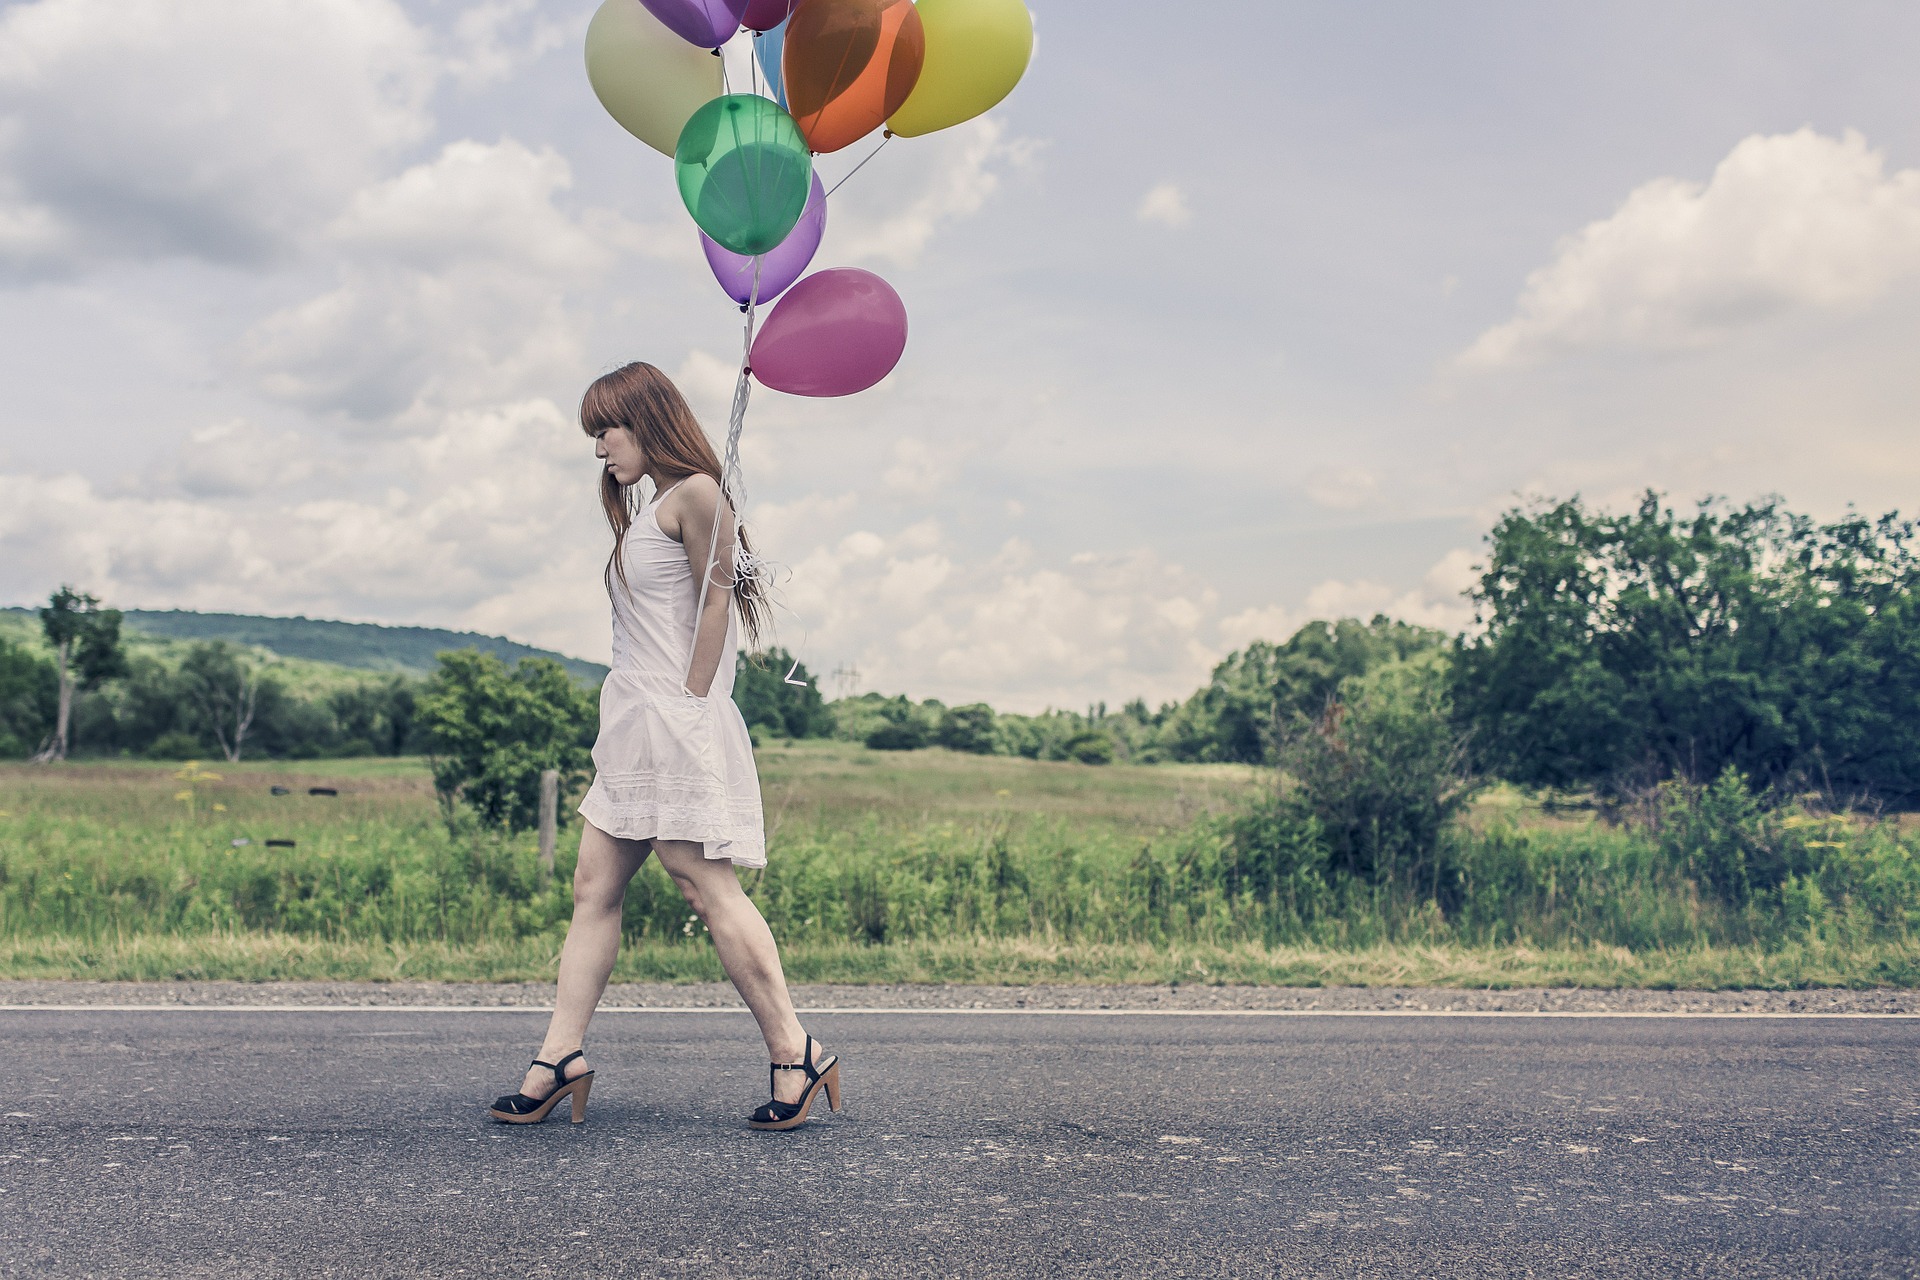 Frau im weißen Kleid auf einer Straße mit bunten Luftballons in der Hand